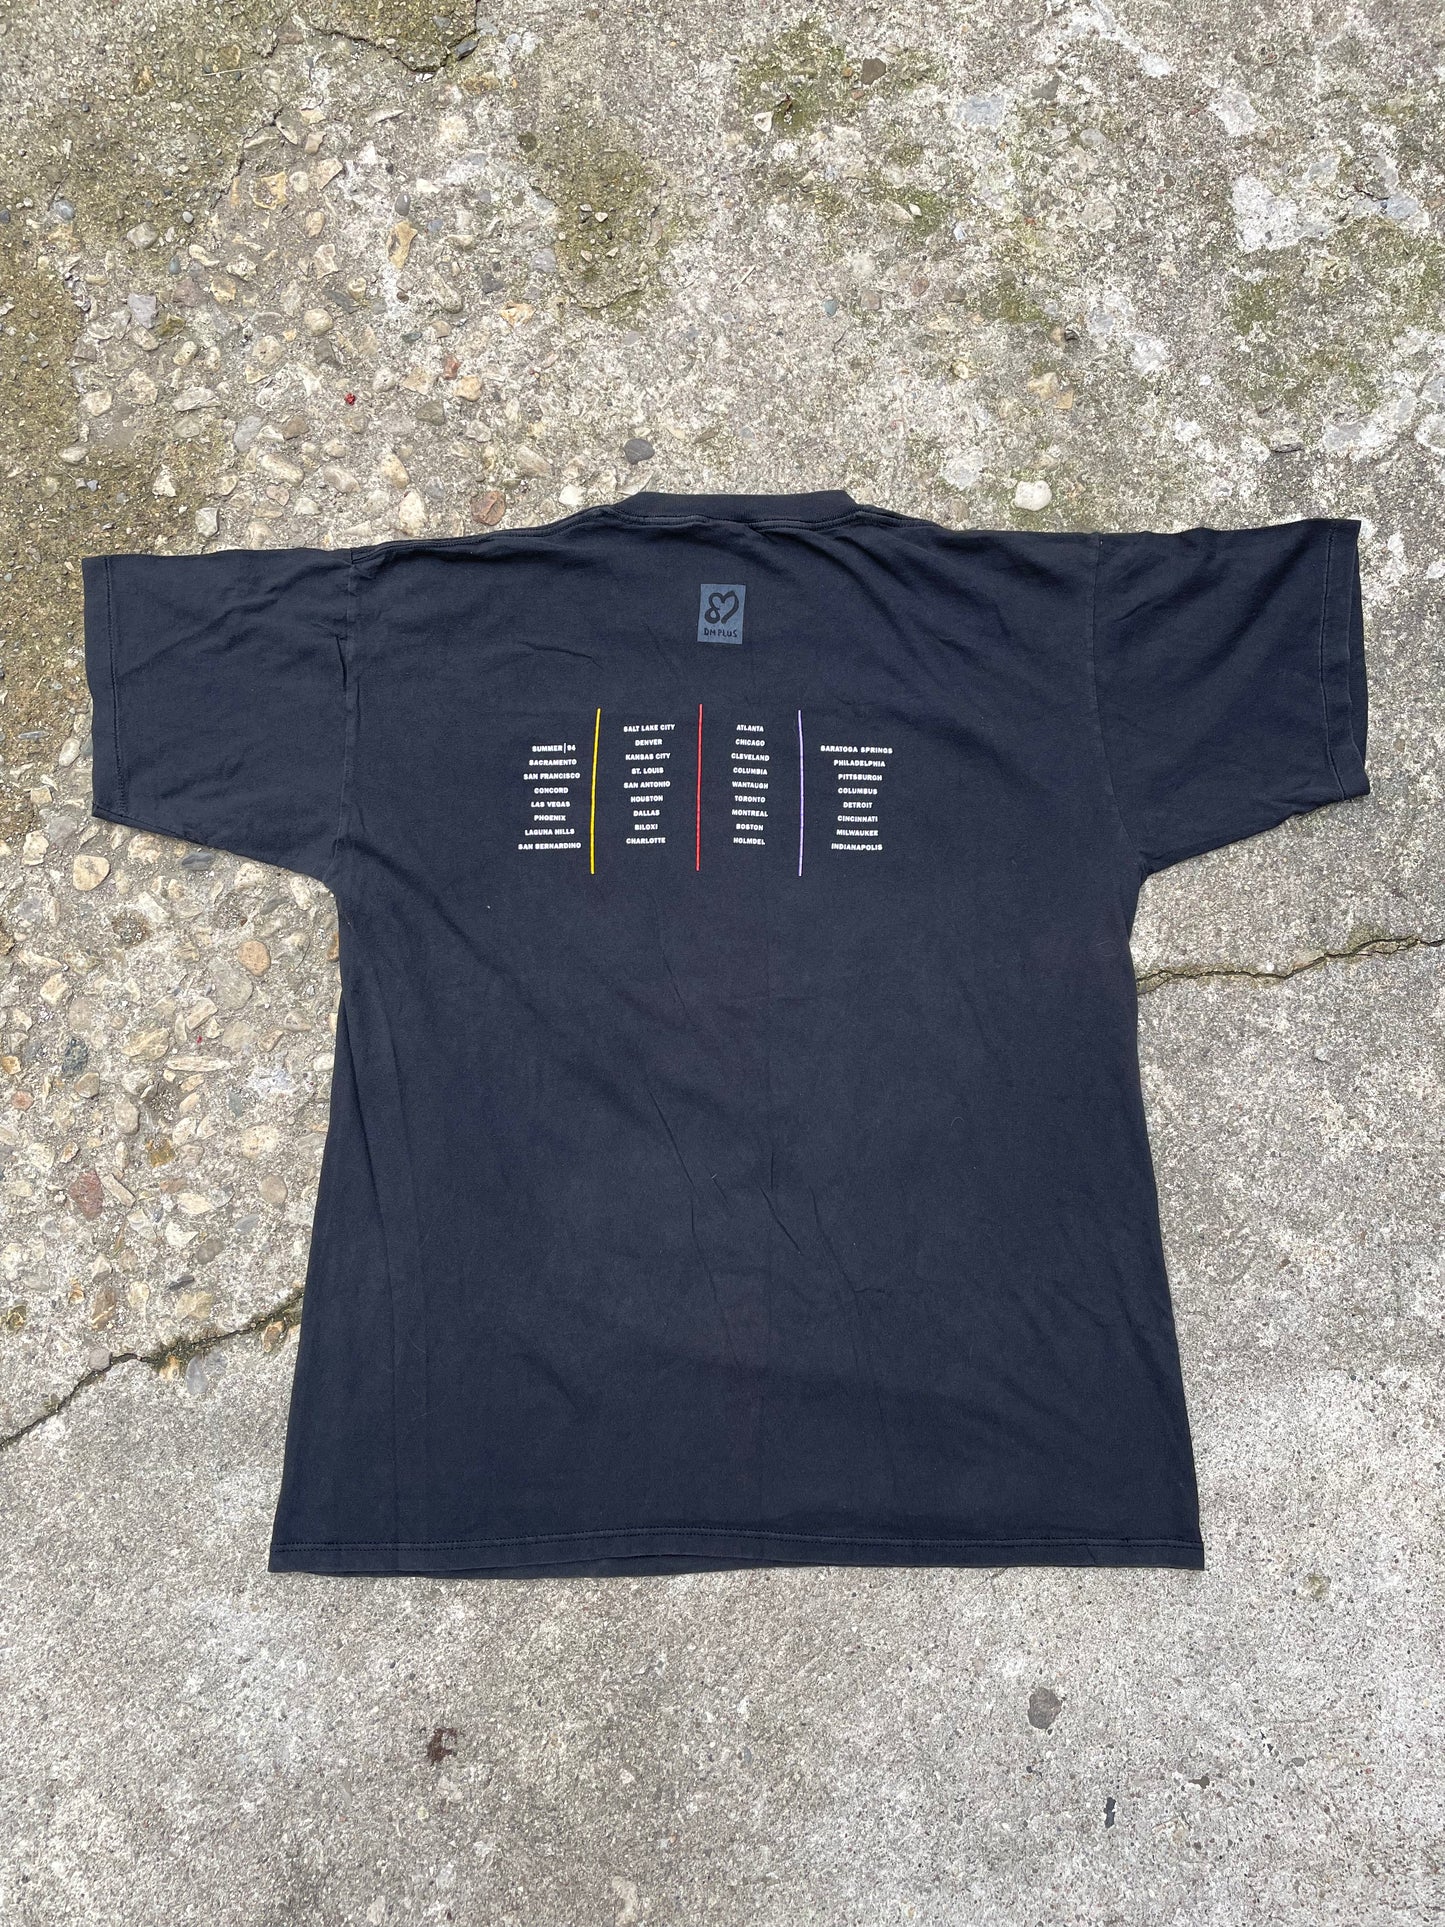 1994 Depeche Mode 'DM Plus' Summer Tour Band T-Shirt - XL